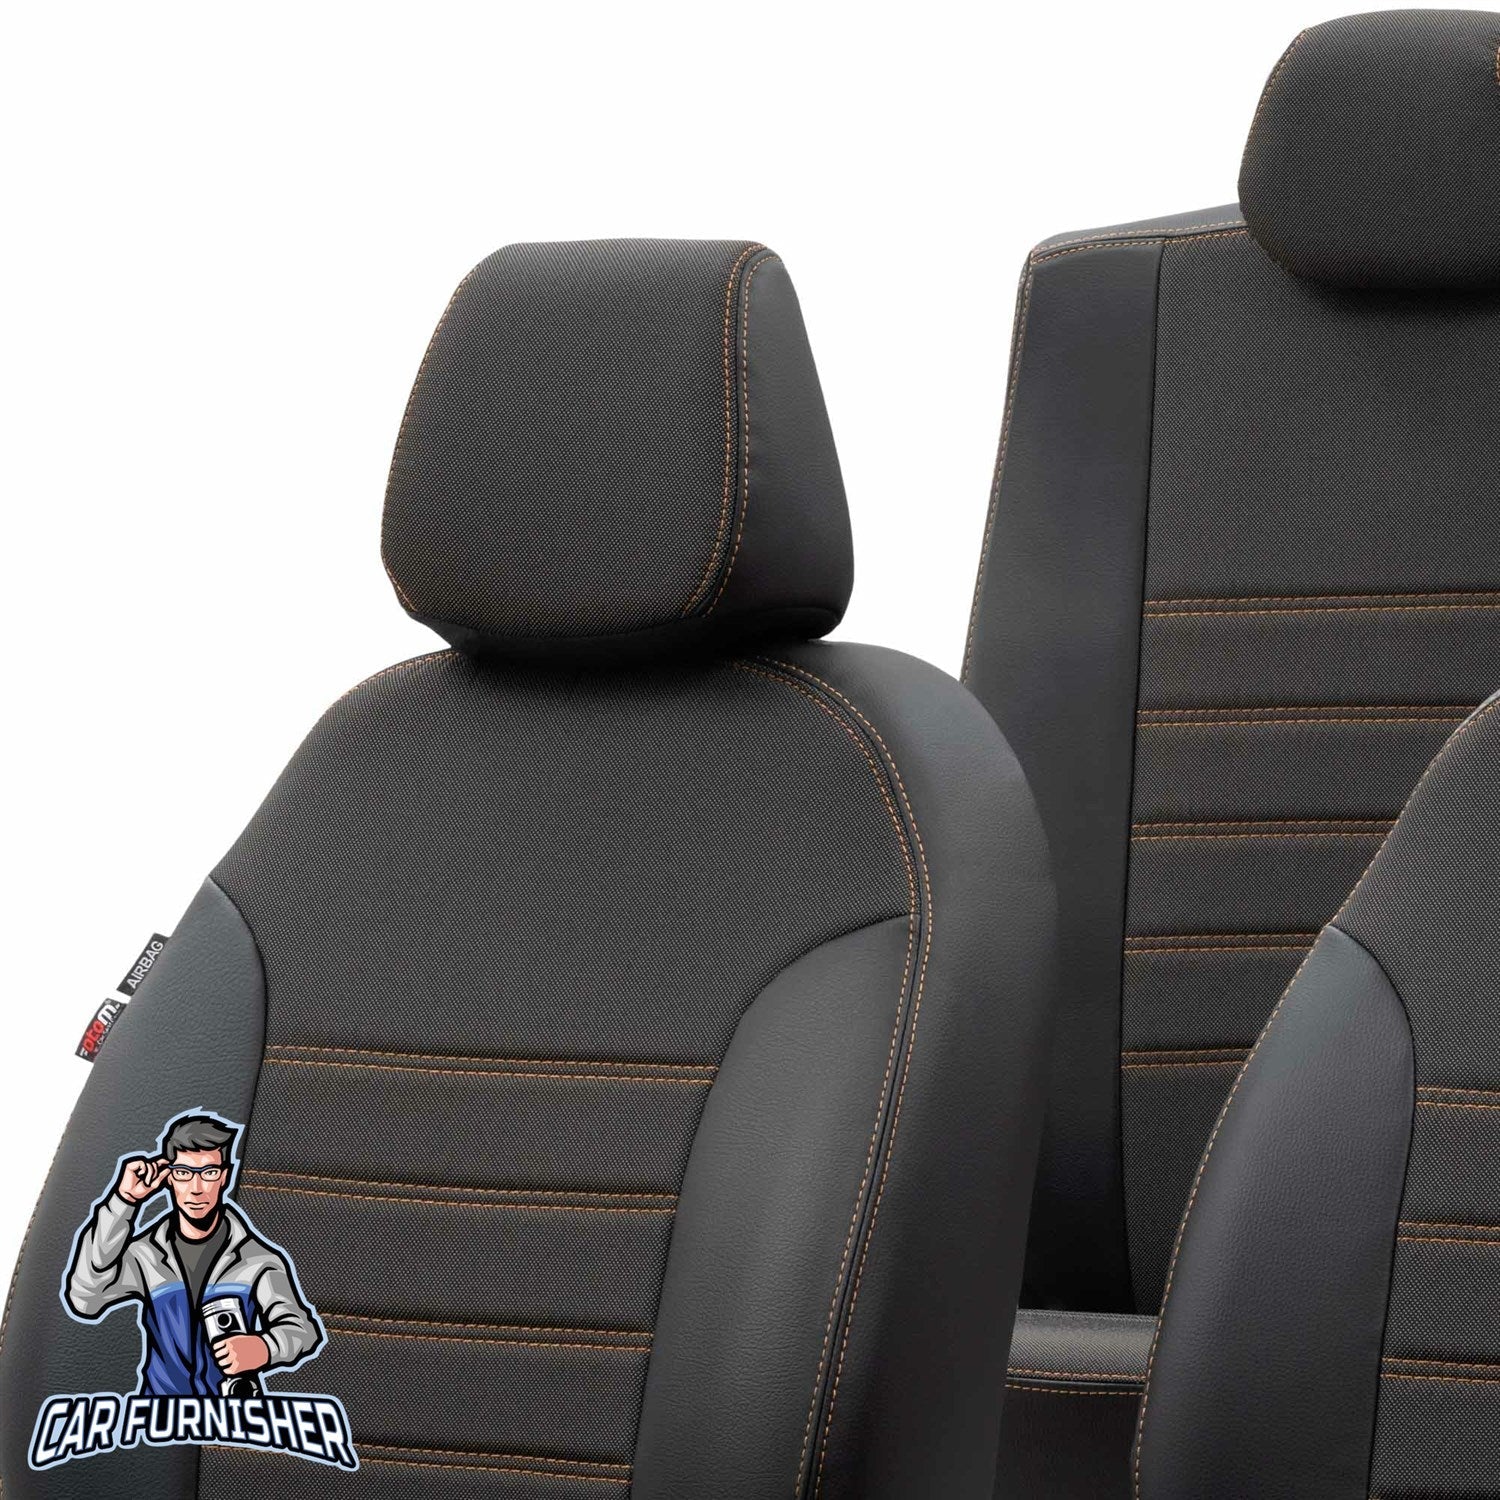 Volkswagen Bora Seat Cover Paris Leather & Jacquard Design Dark Beige Leather & Jacquard Fabric